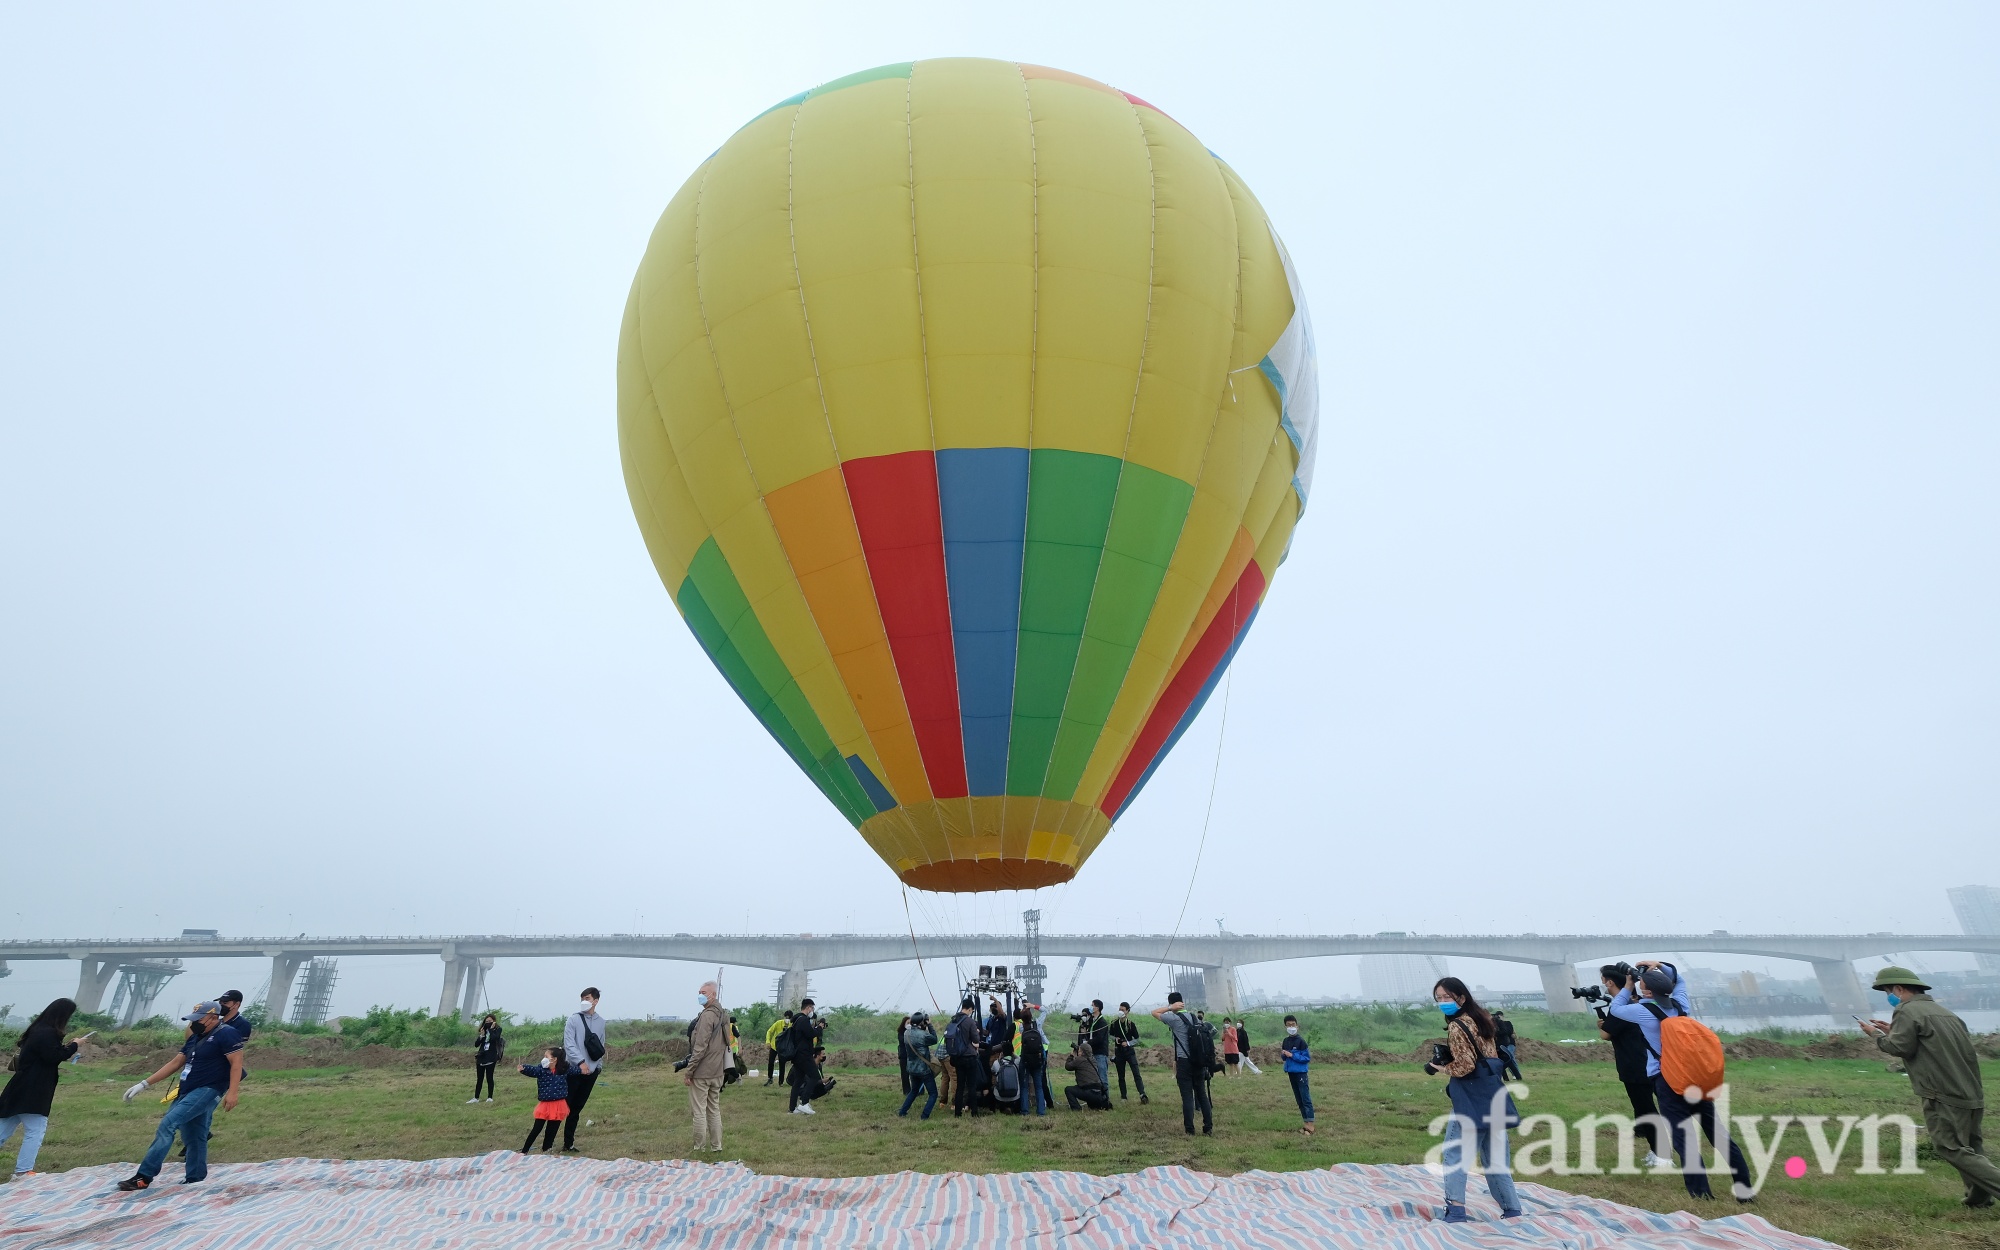 Lần đầu tiên tổ chức Ngày hội khinh khí cầu tại Hà Nội: Nhanh chân đến để trải nghiệm khoảnh khắc hiếm có ngắm thành phố từ trên cao - Ảnh 5.